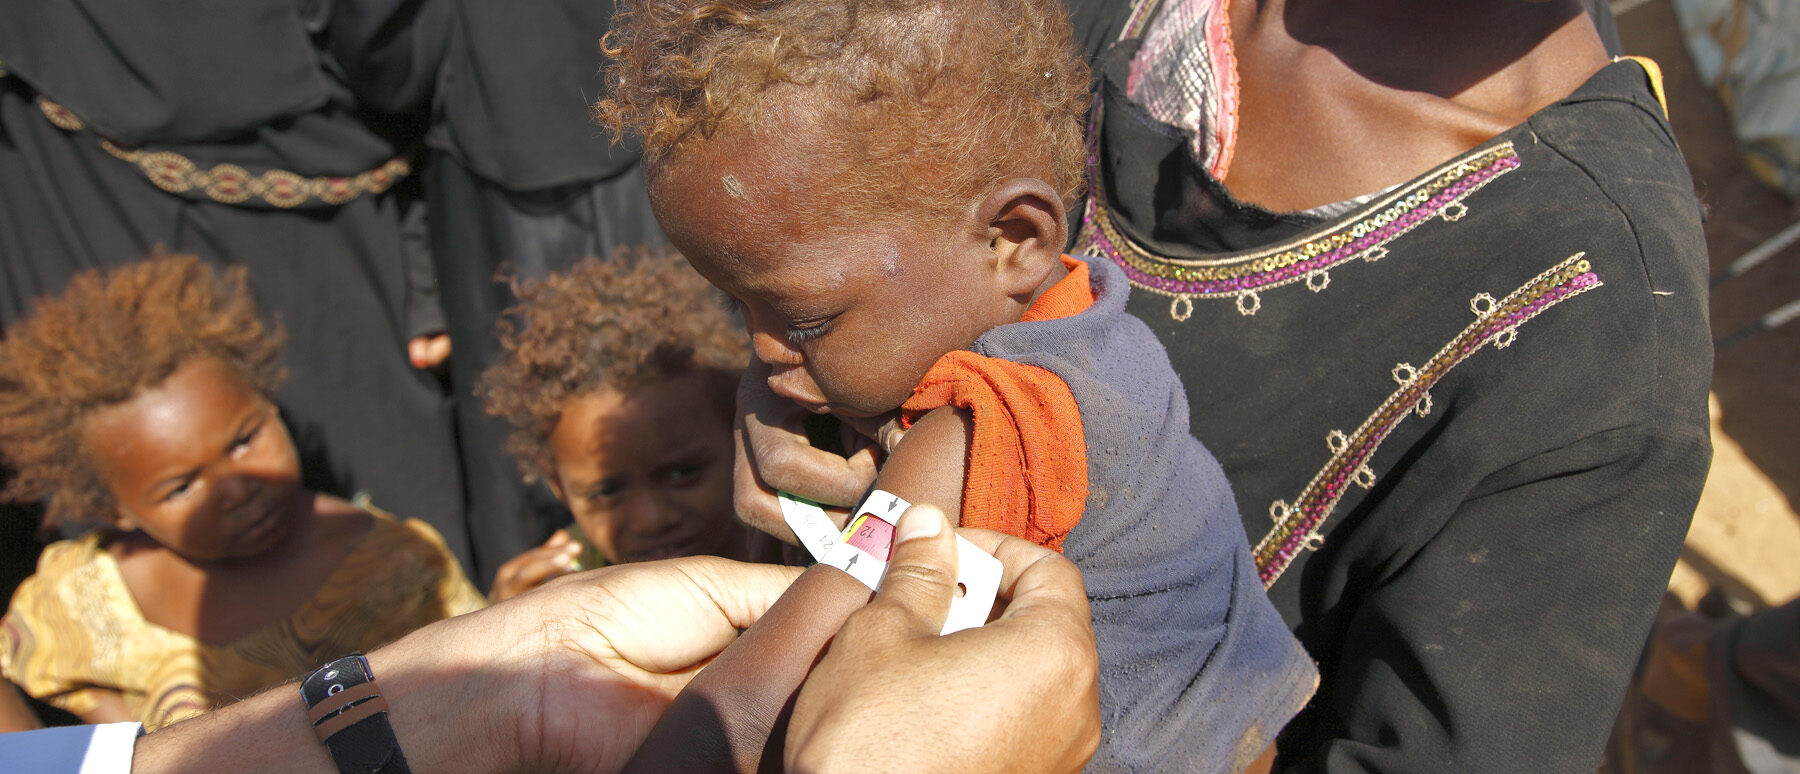 Une grande partie de la population yéménite souffre de malnutrition | © photo d'illustration (2009) IRIN/Flickr/CC BY-NC-ND 2.0